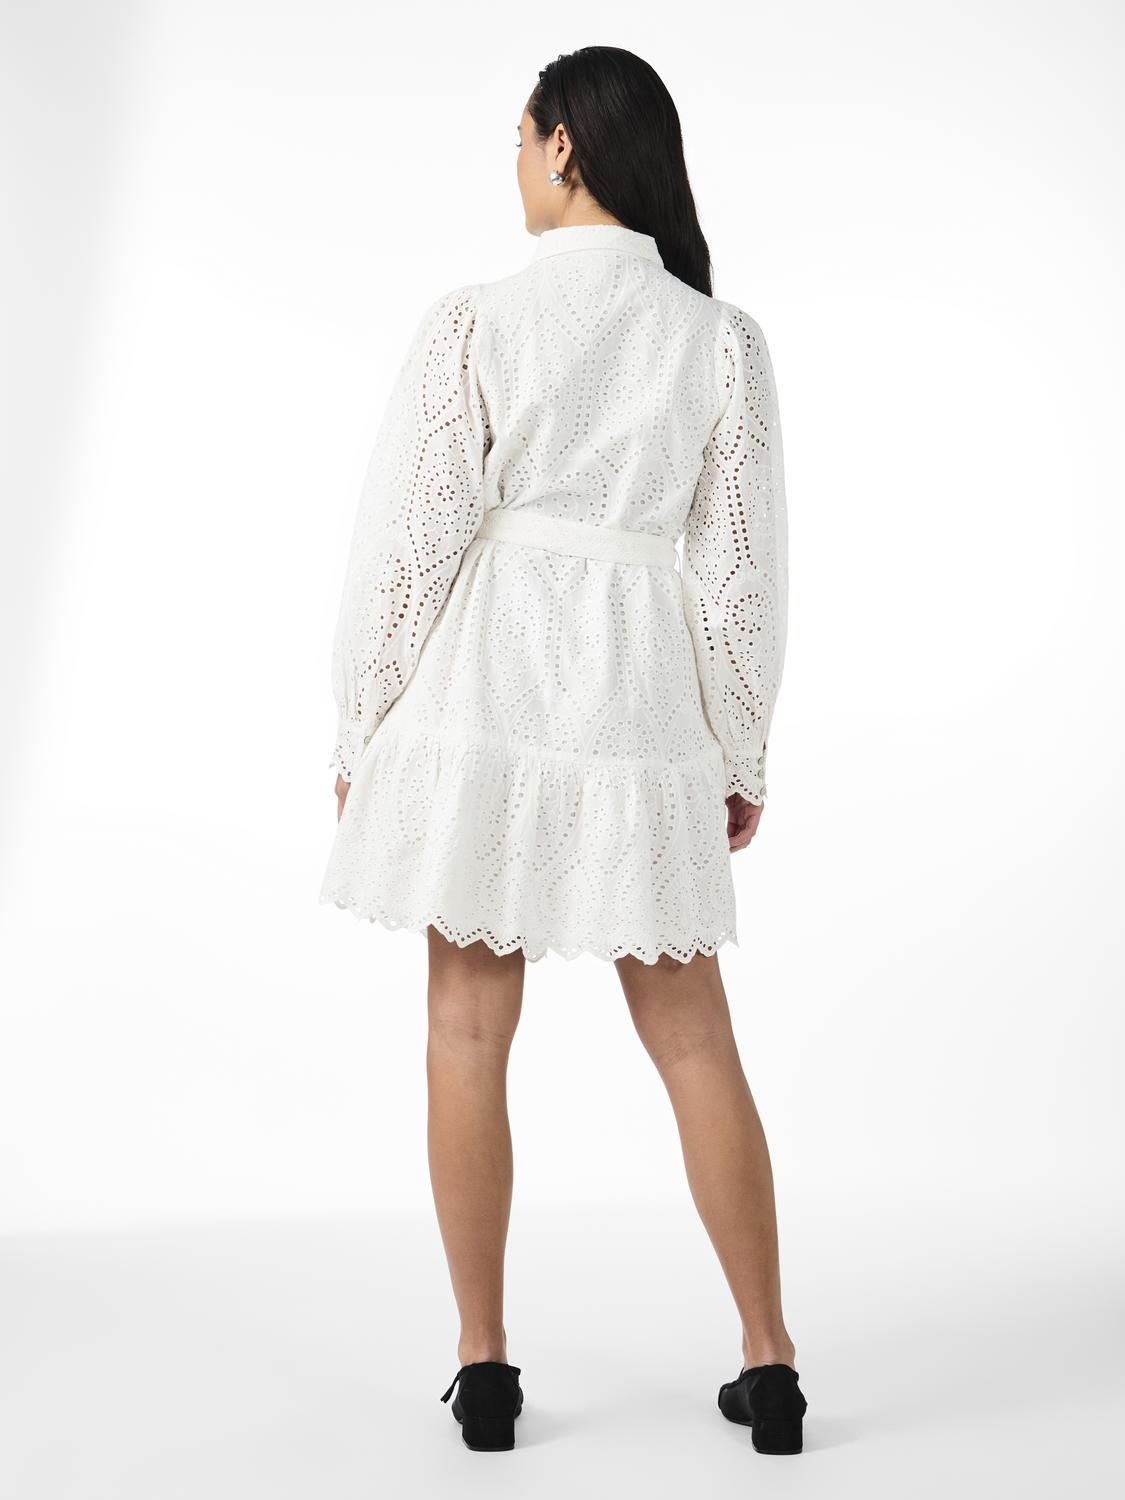 YASHOLI Dress - Star White